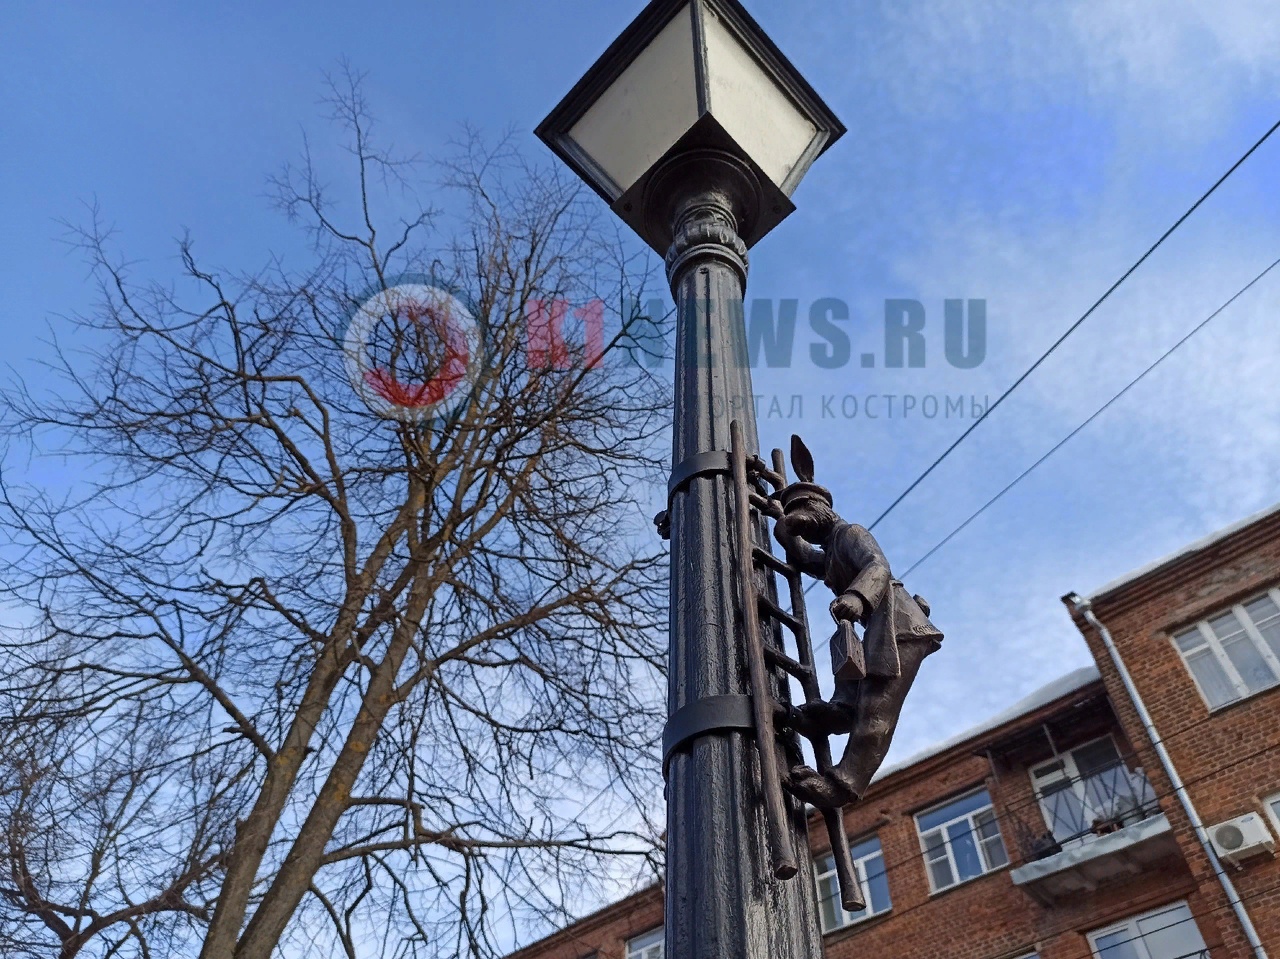 Заяц-фонарщик создает уют на костромской улице